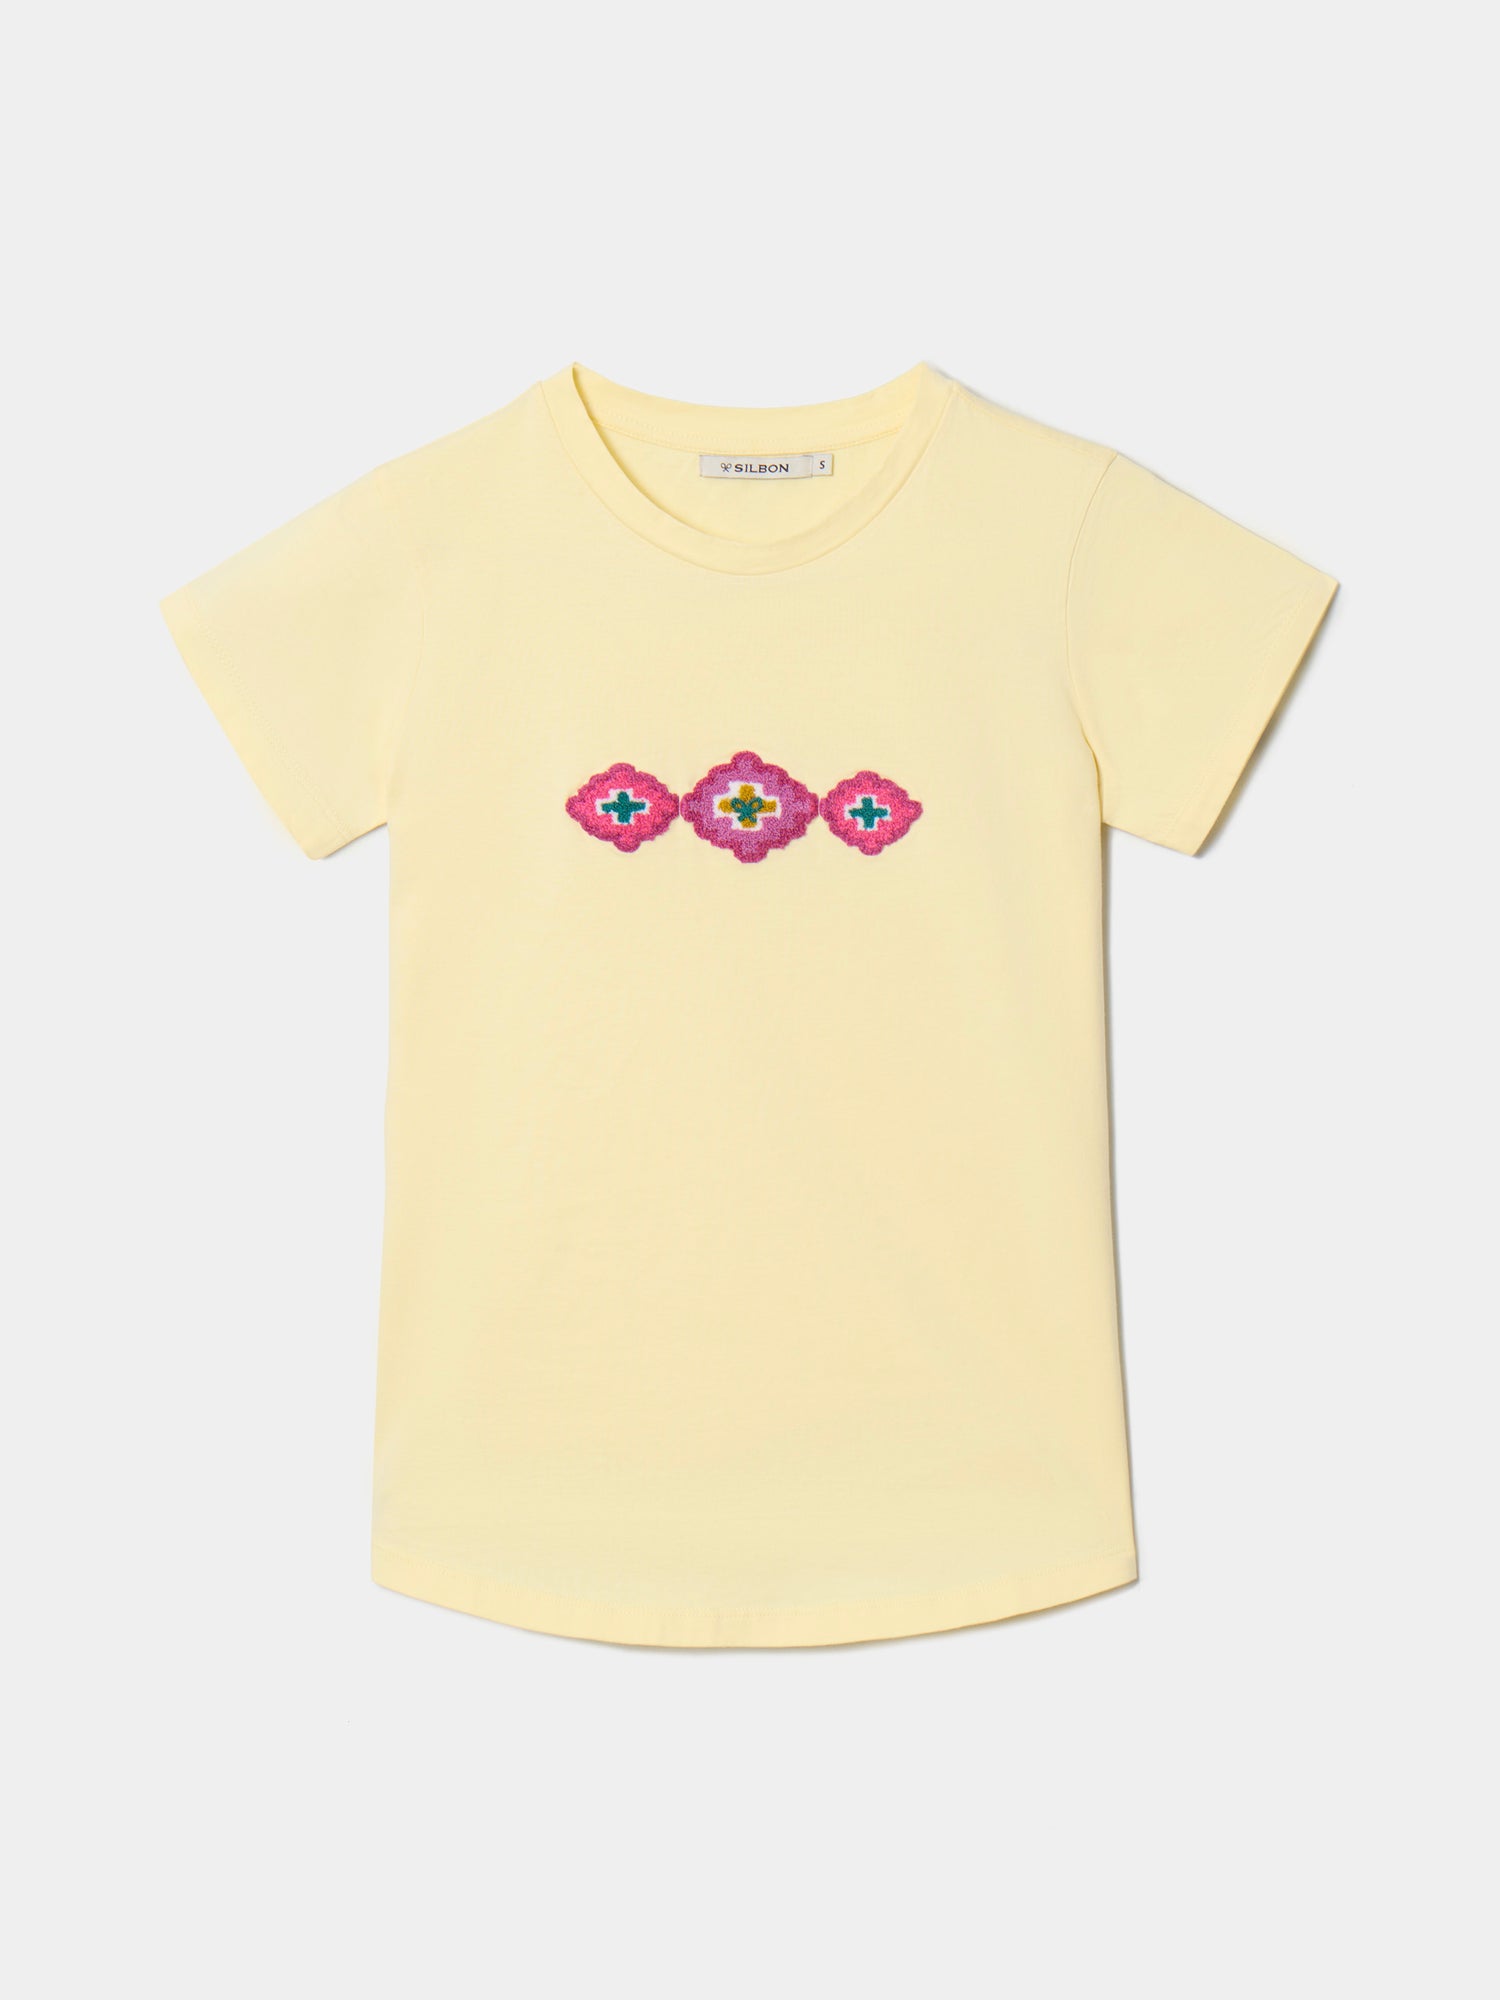 Camiseta woman dibujos etnicos amarilla 